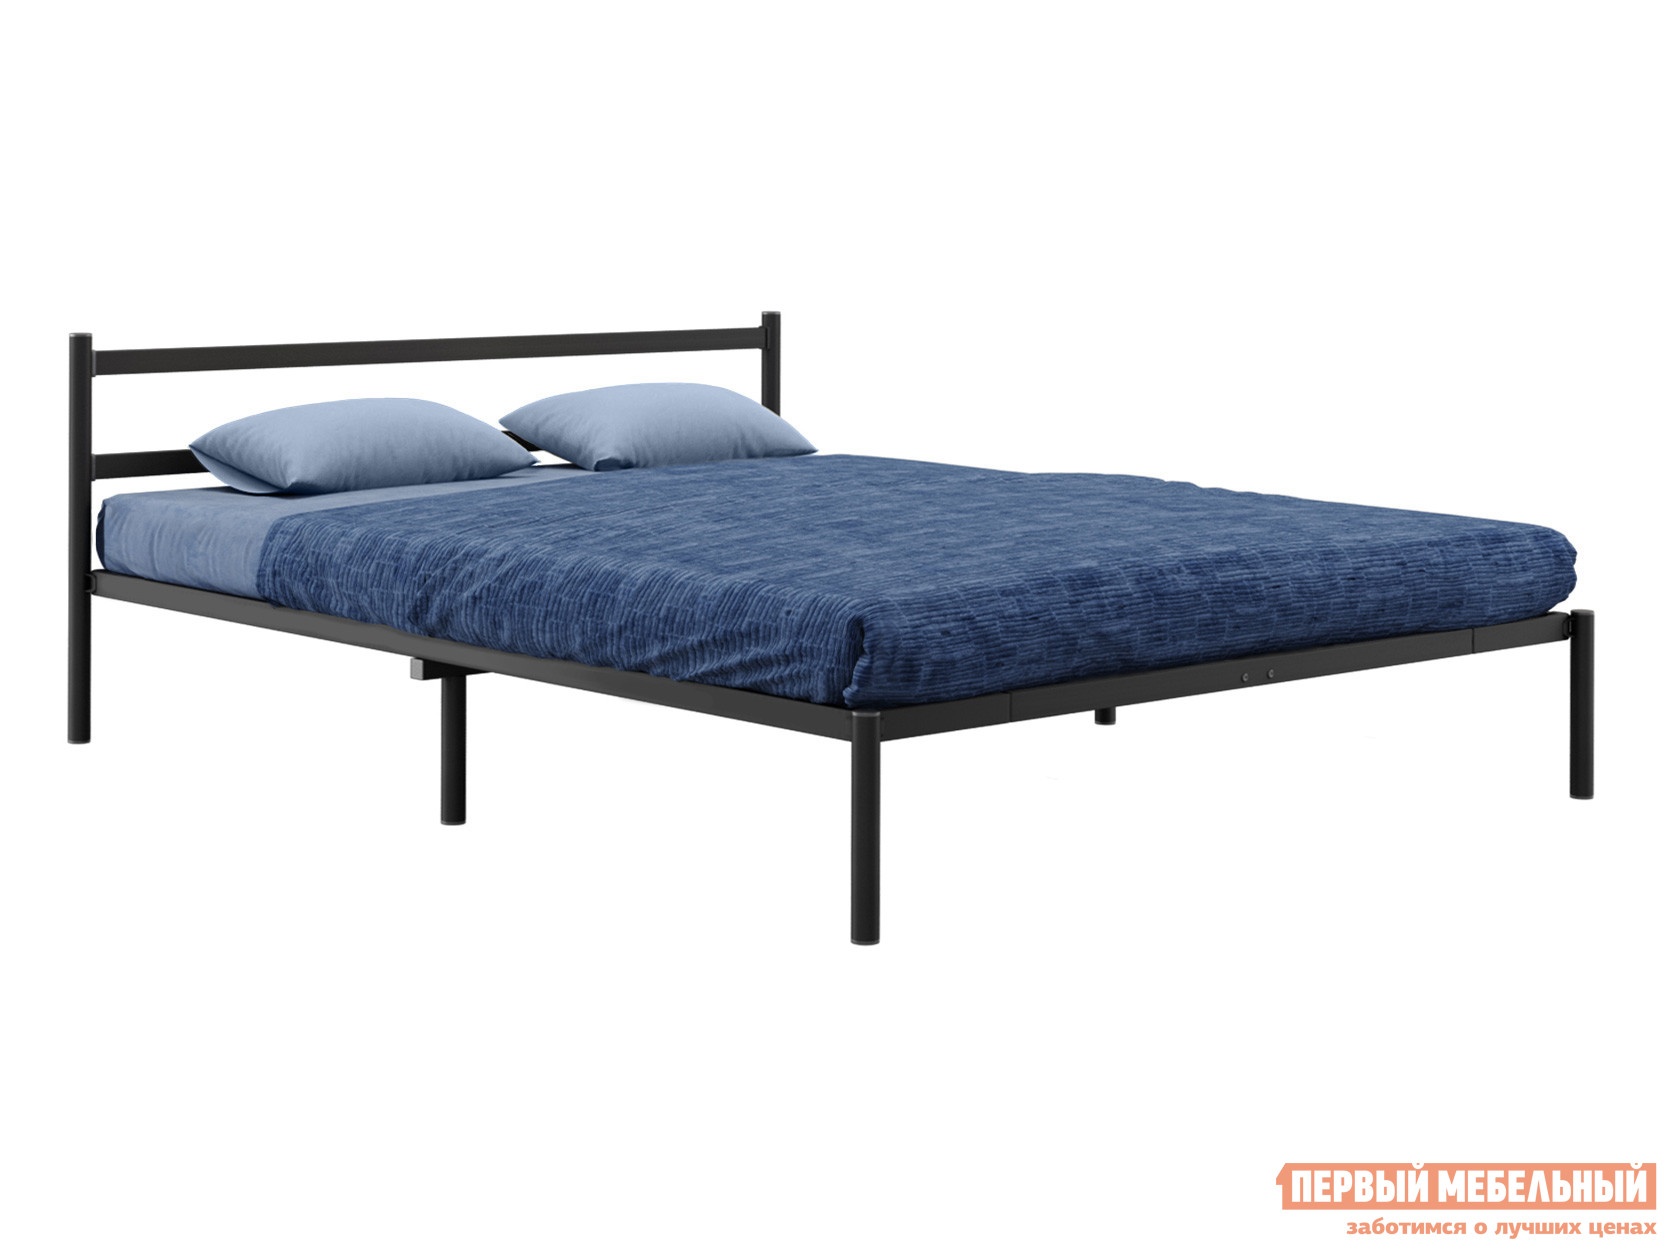 Двуспальная кровать грета черный, металл, 160х200 см, с матрасодержателем